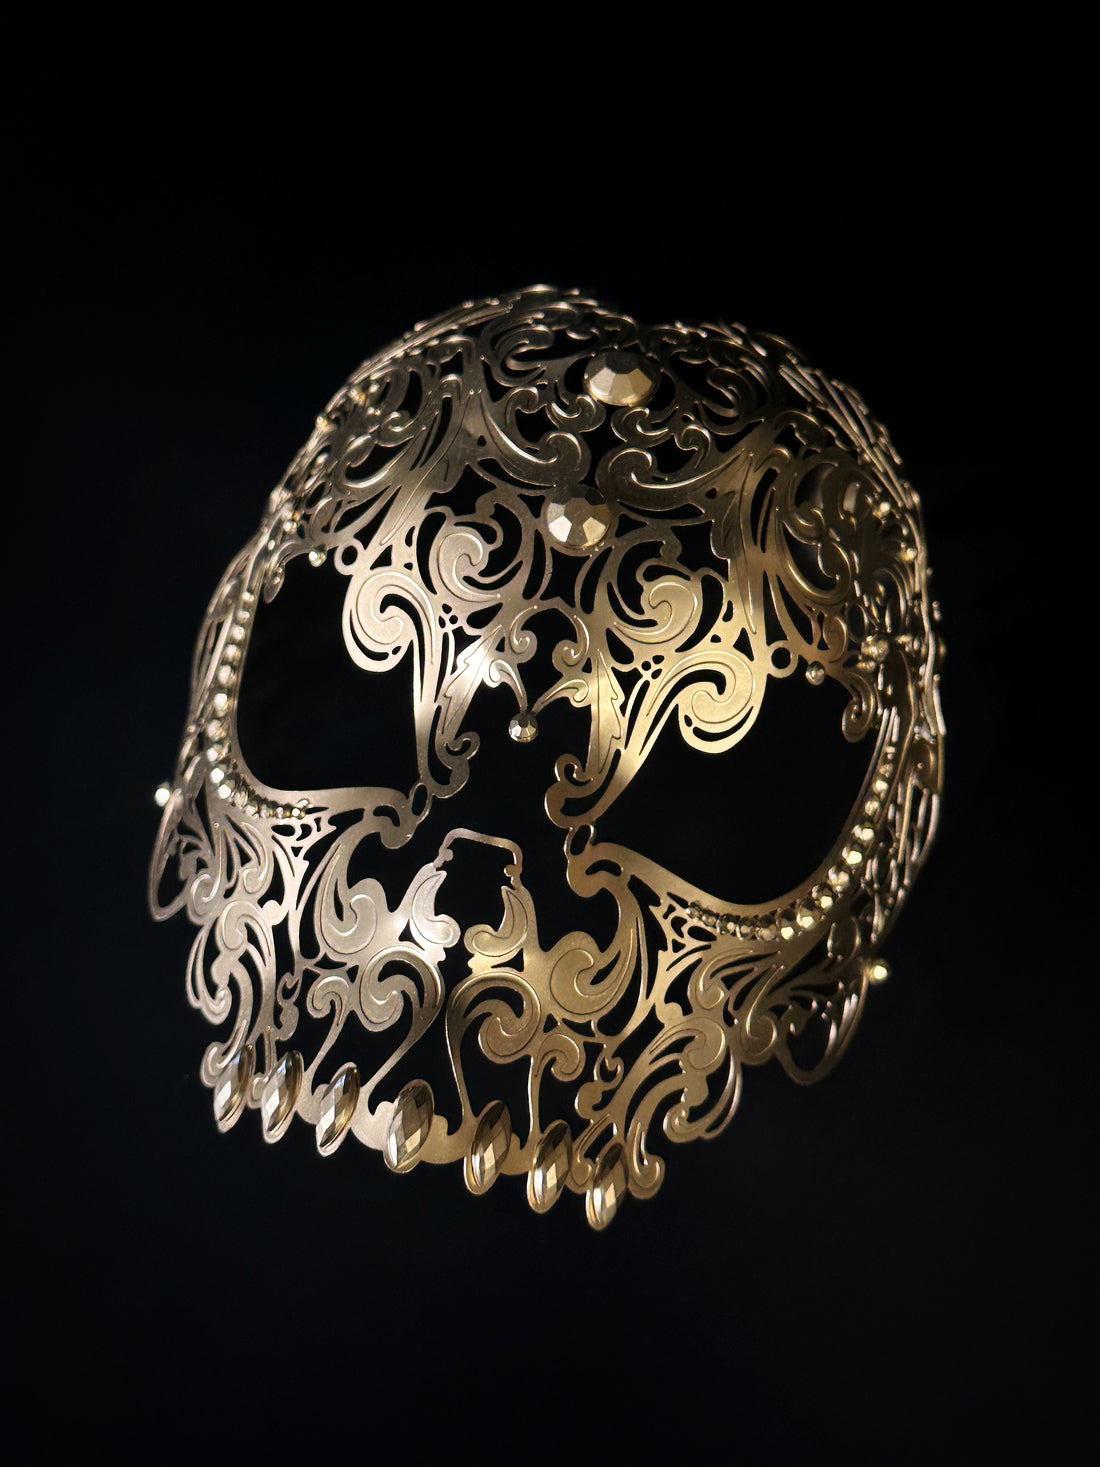 Metal skull mask in gold.